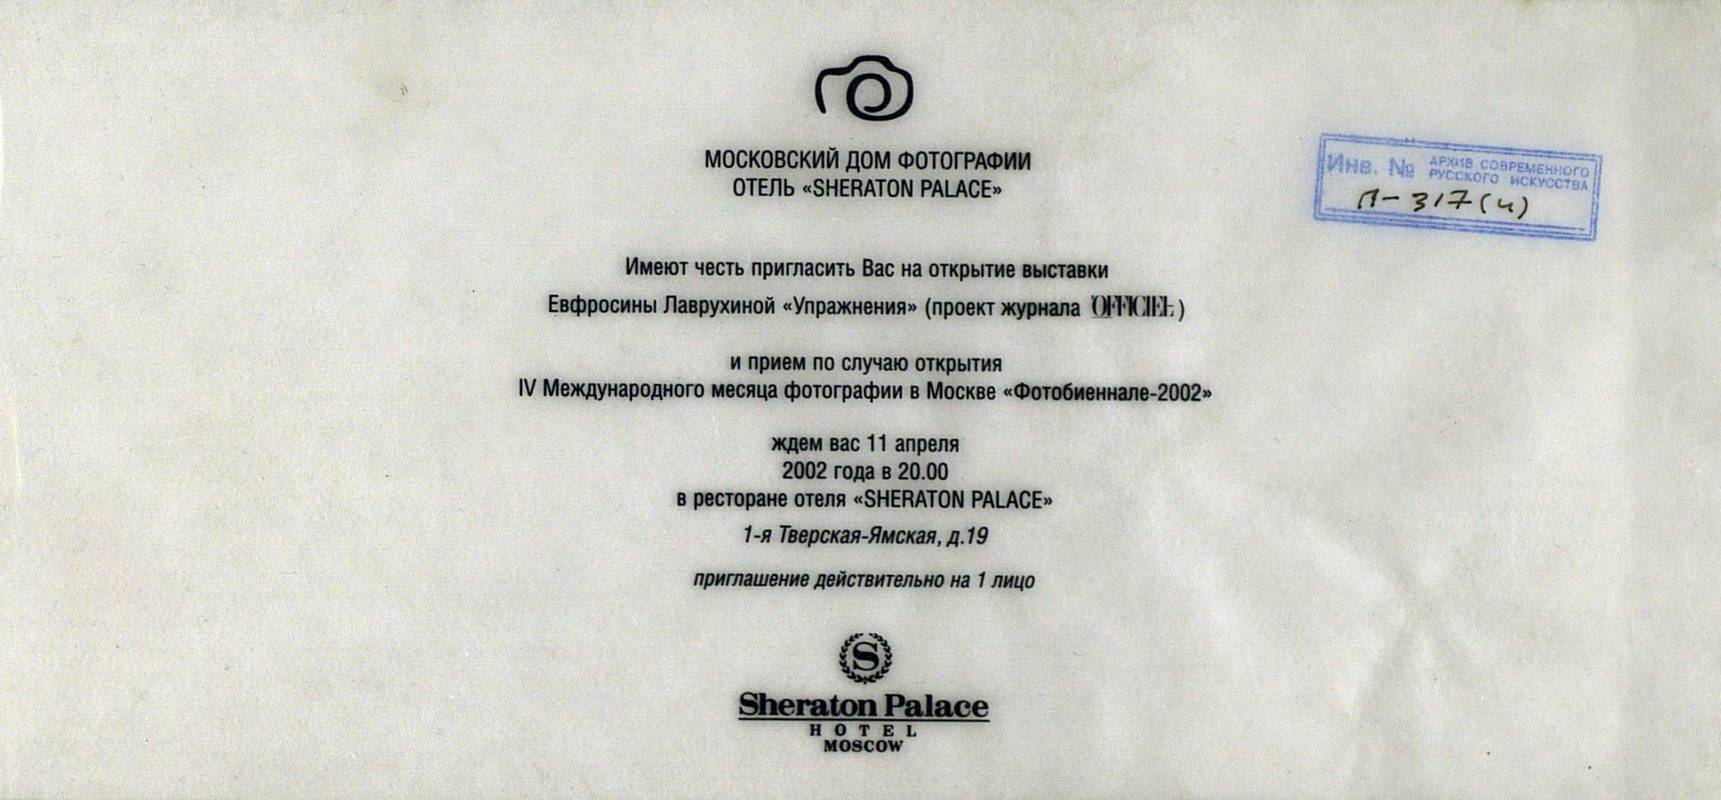 Ефросина Лаврухина. Упражнения. Приём по случаю открытия IV Международного месяца фотографии в Москве «Фотобиеннале‑2002»